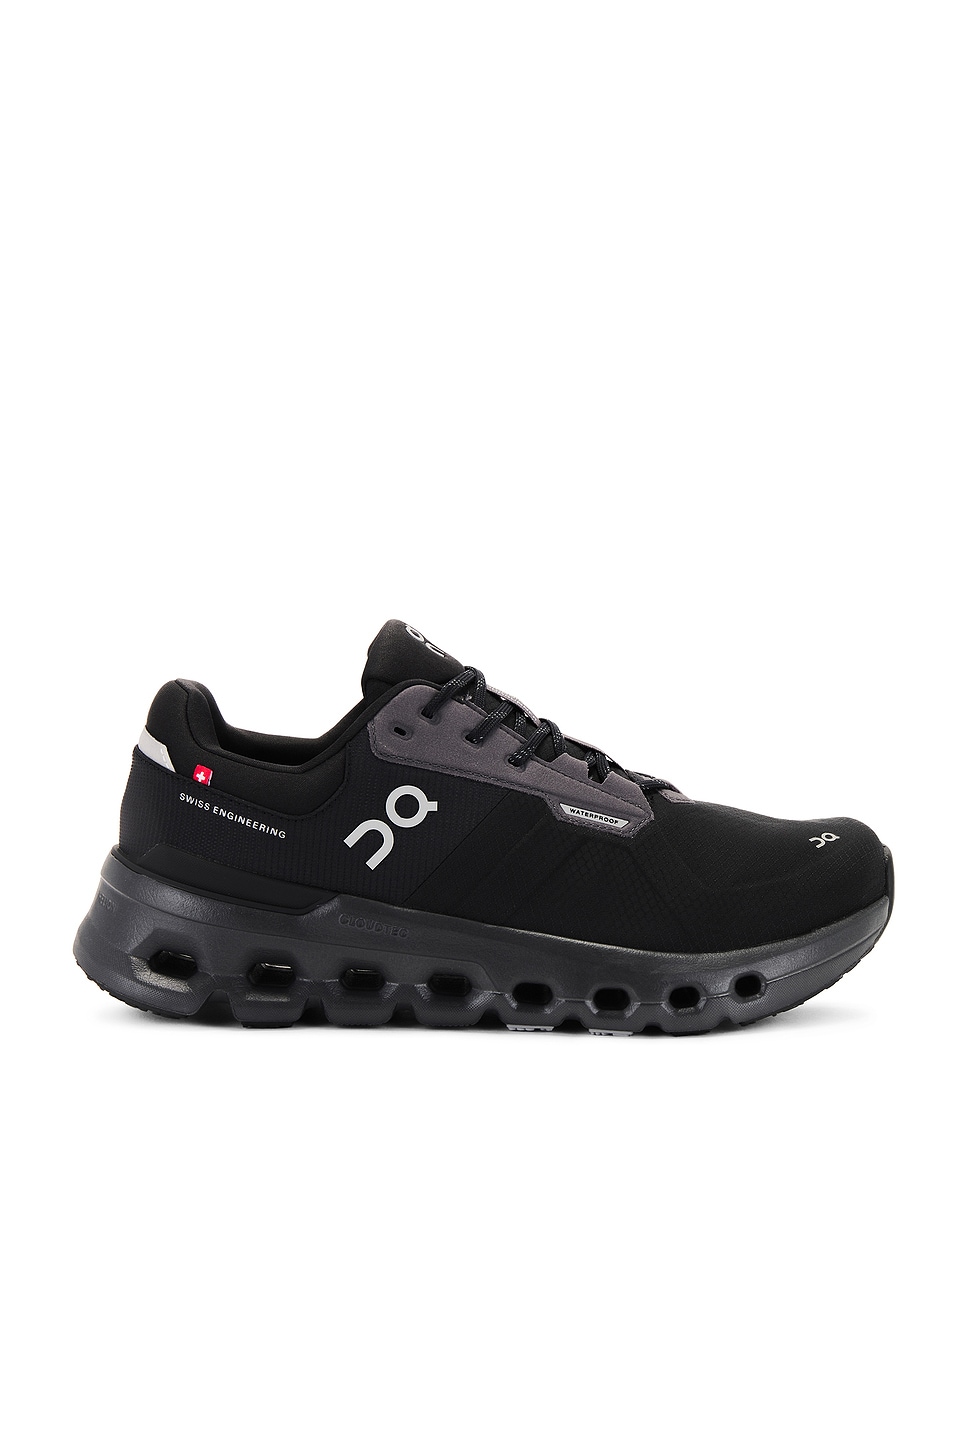 Cloudrunner 2 Waterproof Sneaker in Black